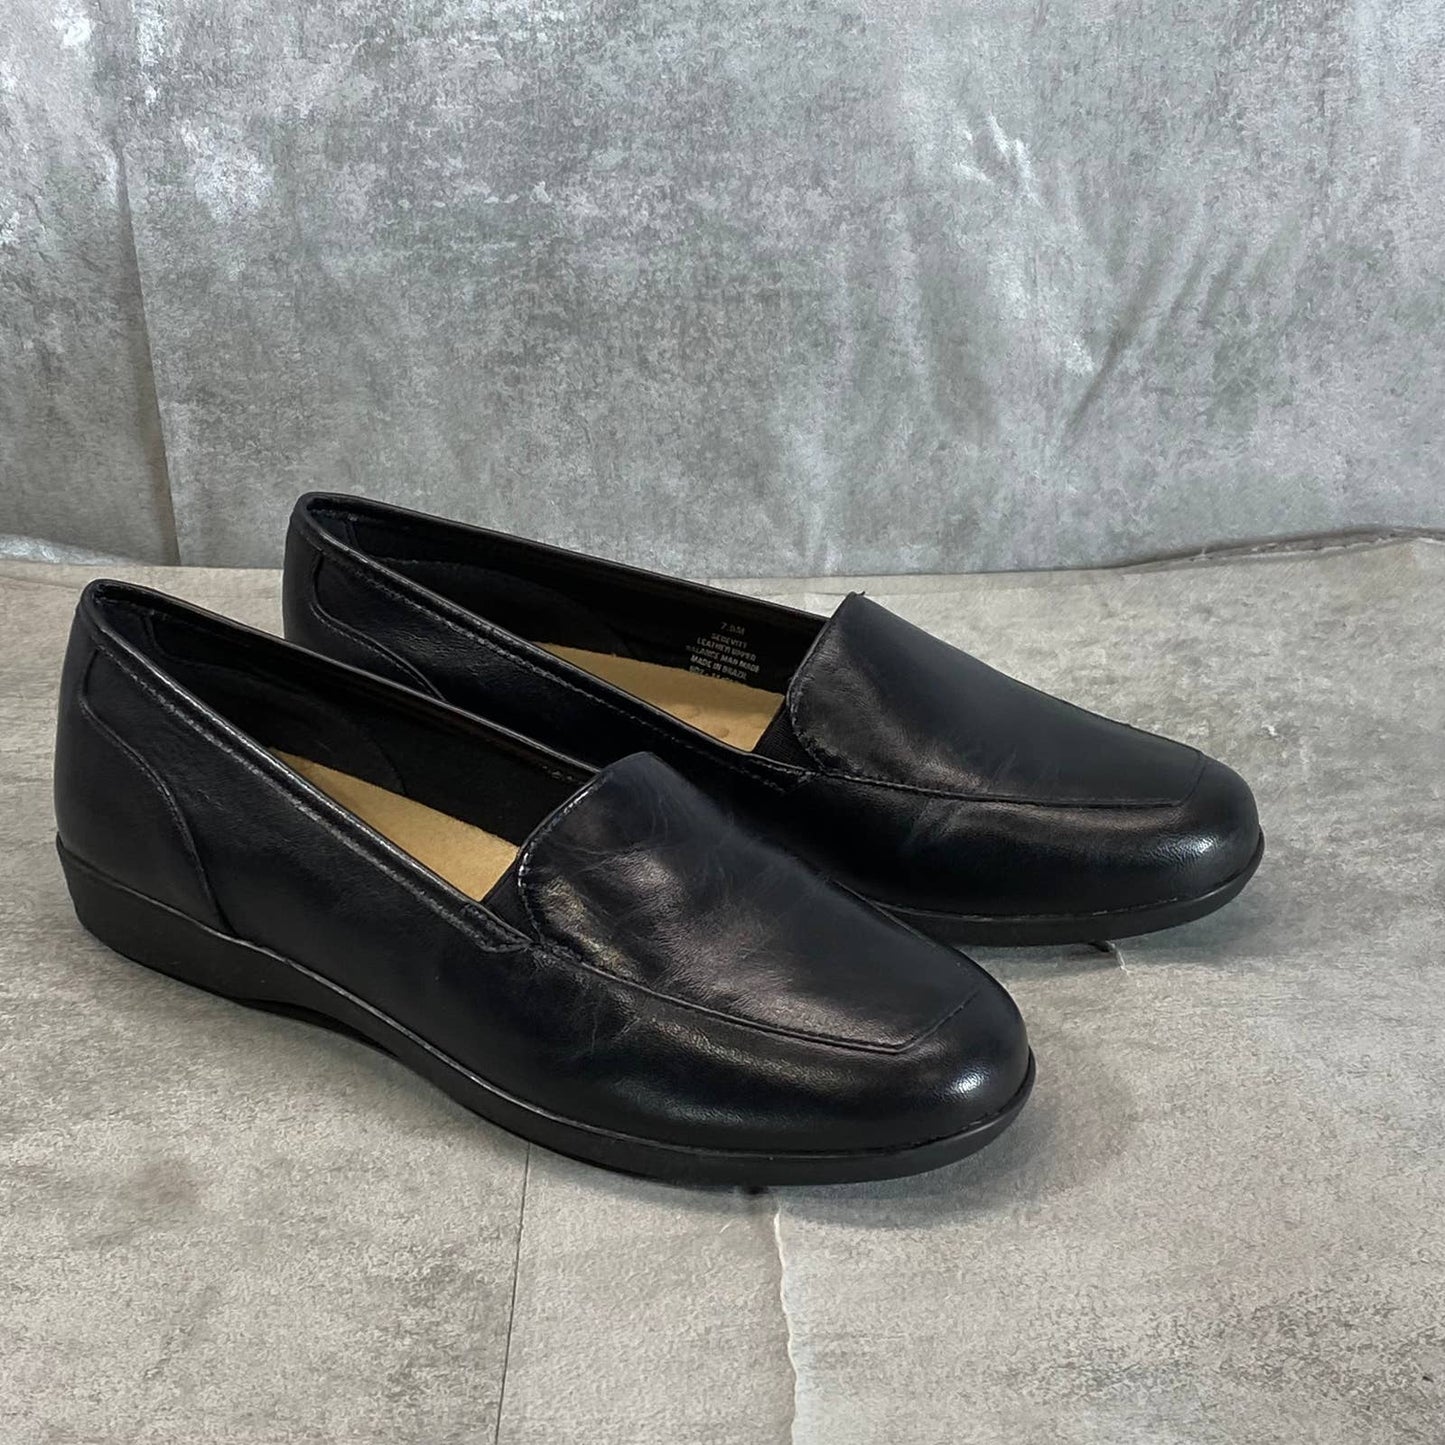 EASY SPIRIT Women's Black Leather Devitt Round-Toe Slip-On Loafer Flats SZ 7.5